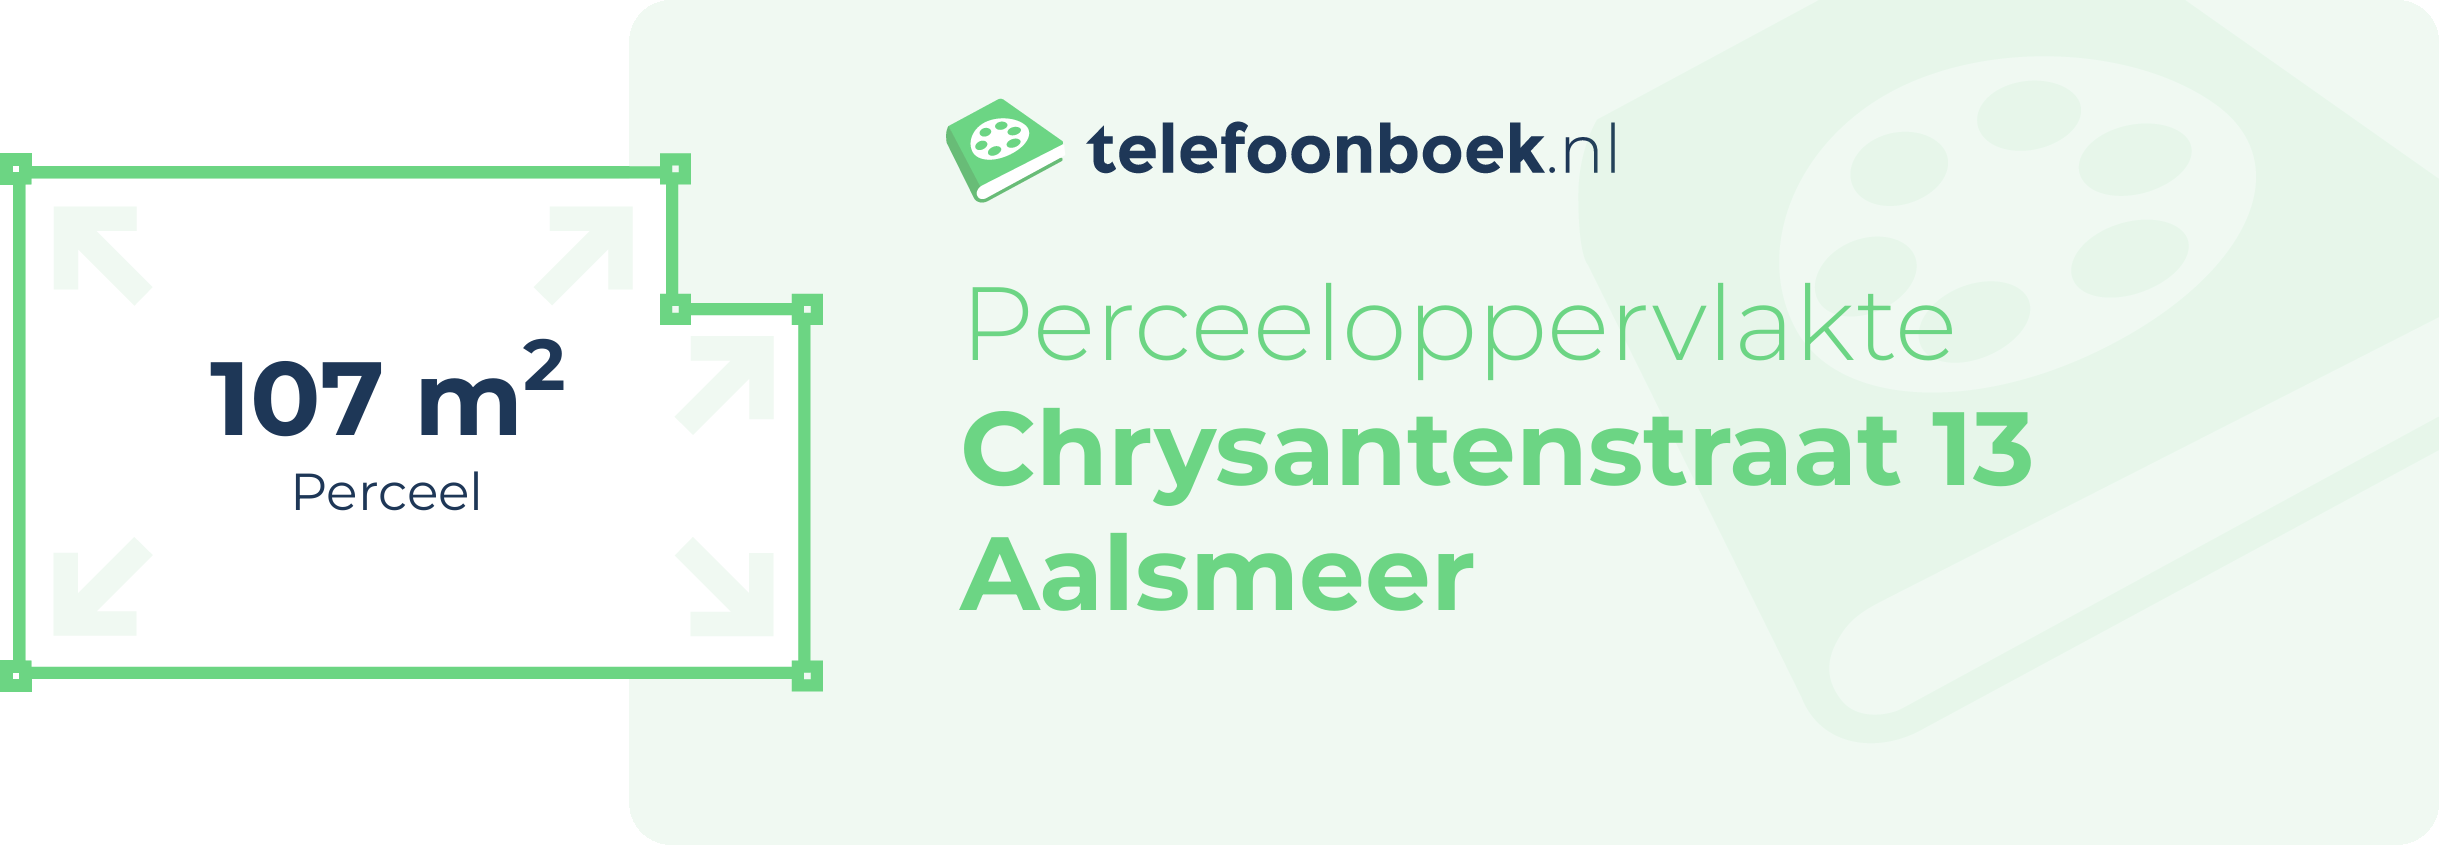 Perceeloppervlakte Chrysantenstraat 13 Aalsmeer